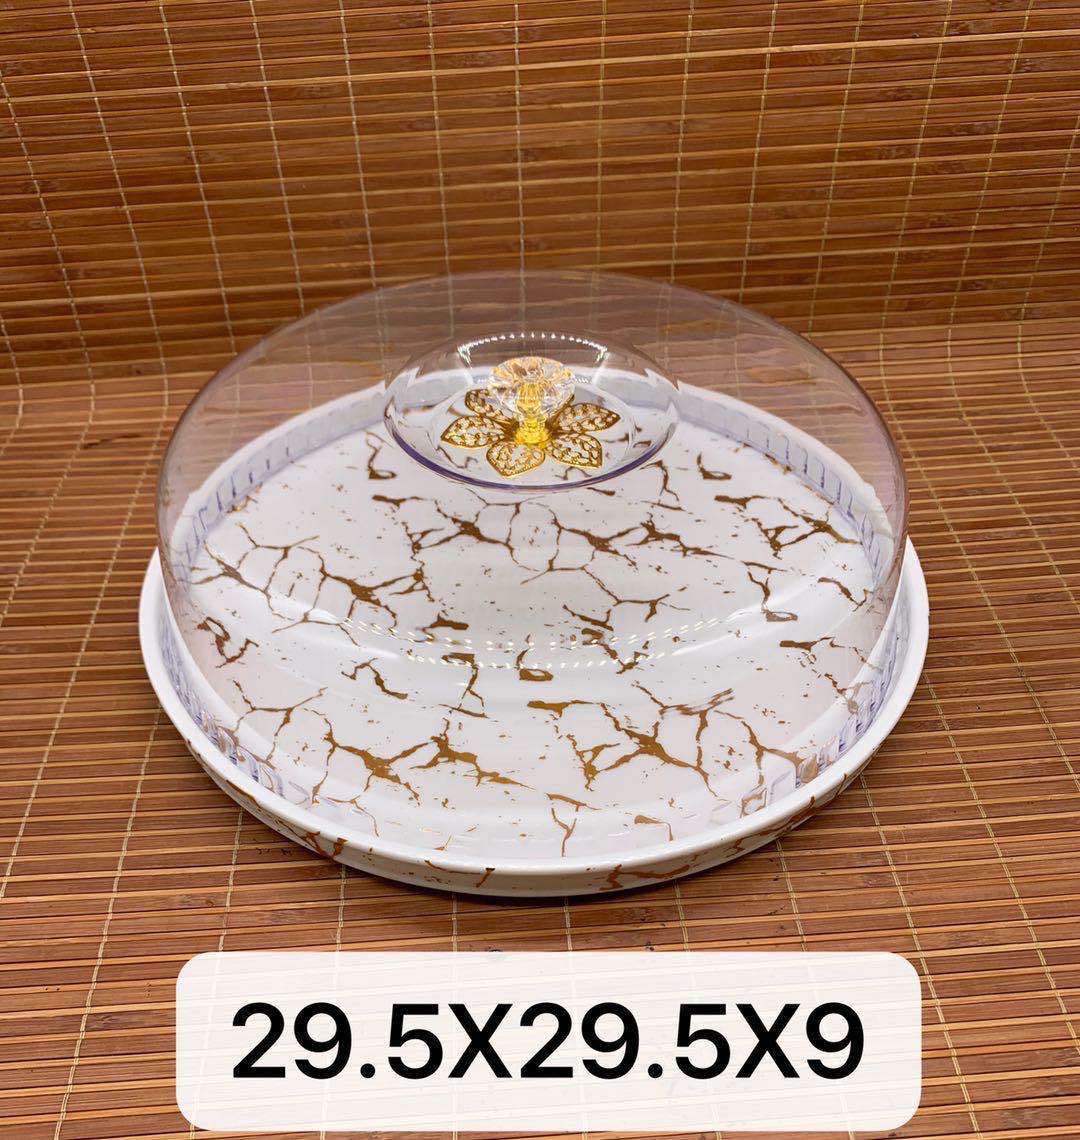 大理石纹蛋糕盘陶瓷360度旋转蛋糕盘点心盘披萨盘水果盘甜品台托盘展示架蛋糕架